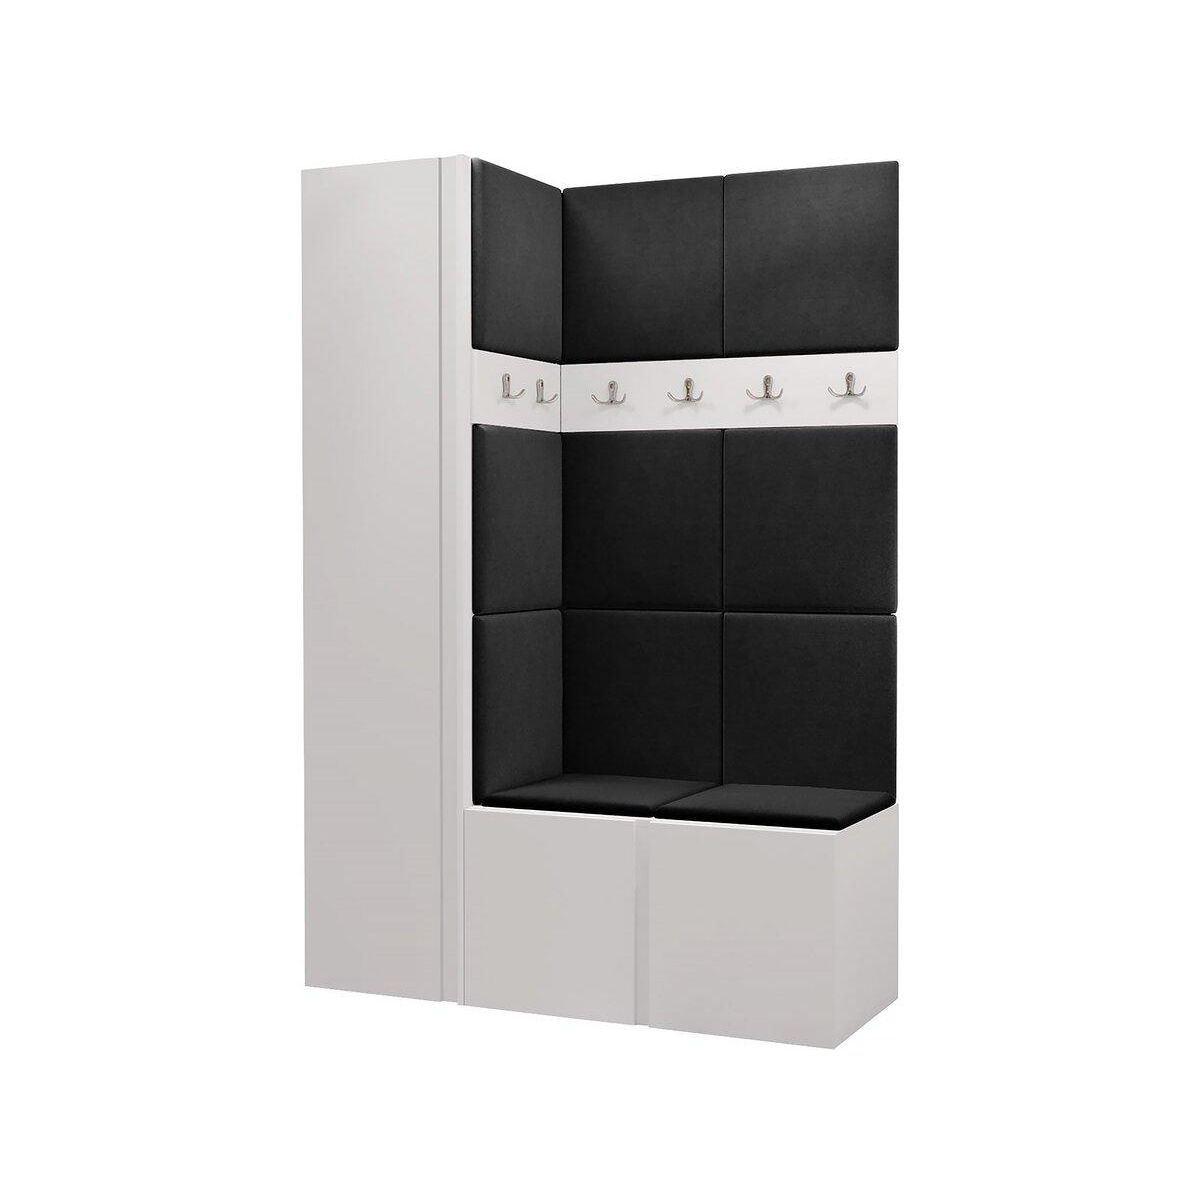 VIDAXL Armoire modulaire 14 compartiments Noir et blanc 37x146x180